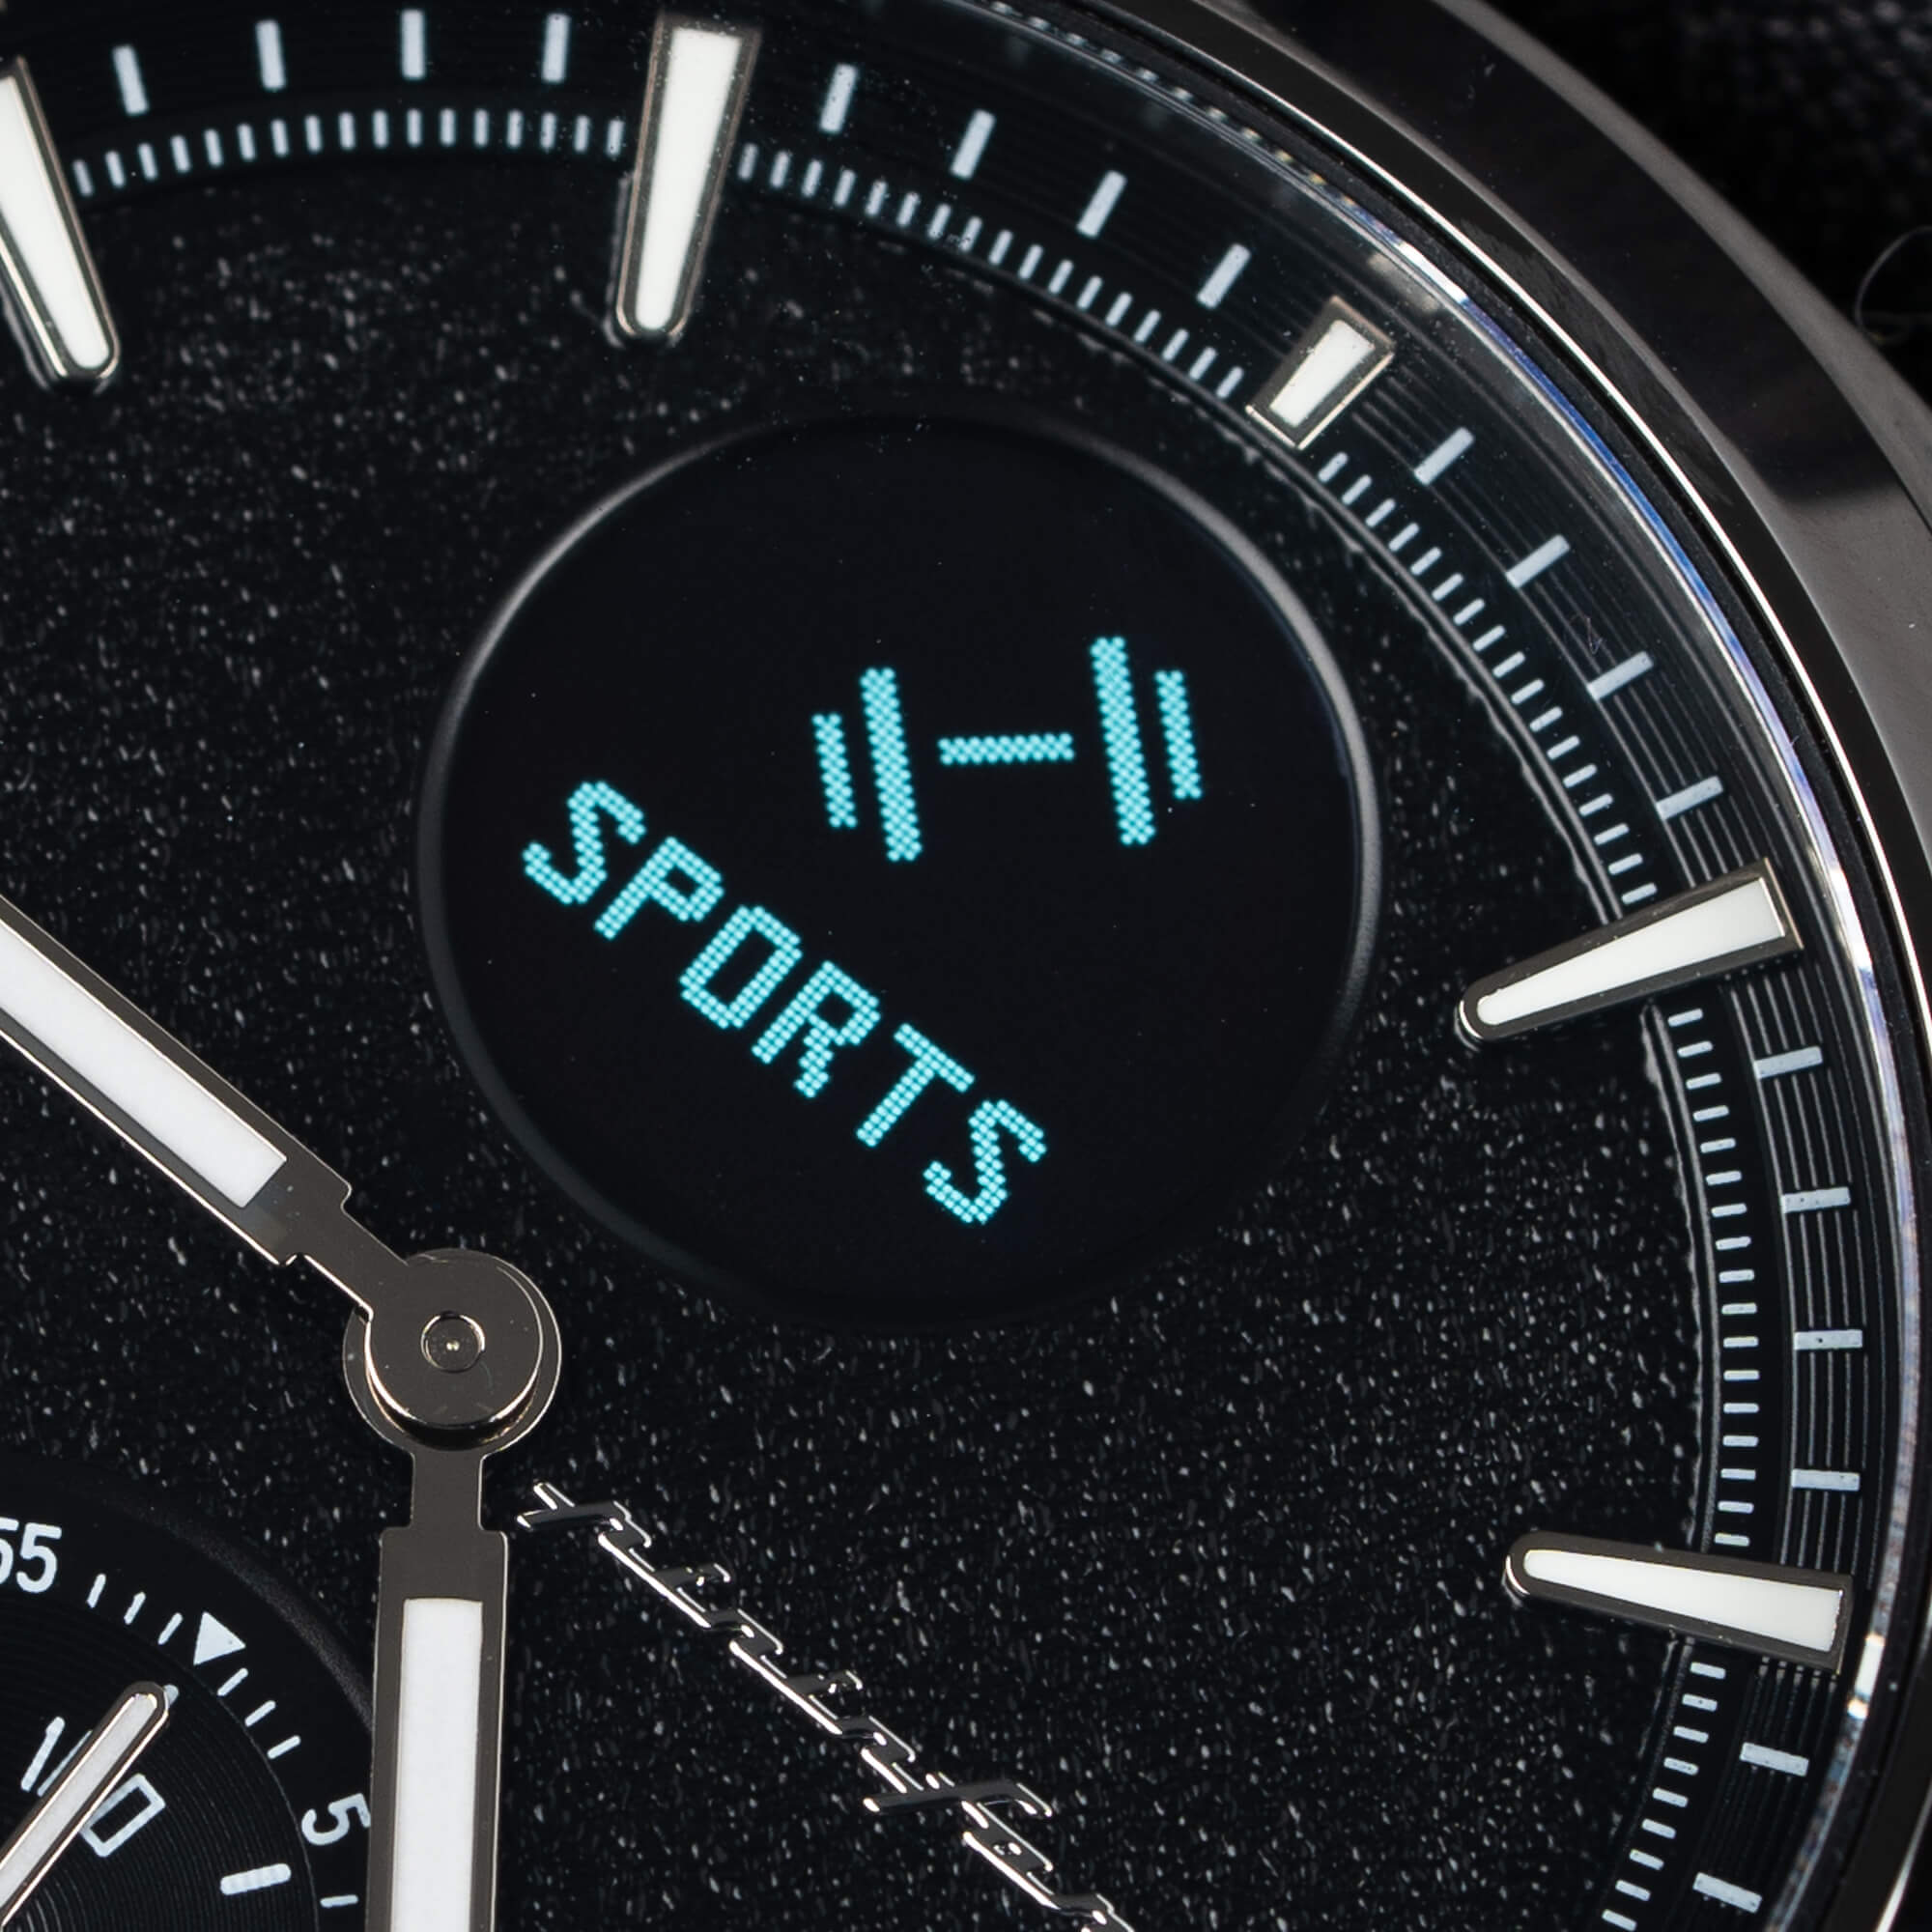 Globics привнесла в гибридные смарт-часы Senso гибридный дизайн от Pininfarina